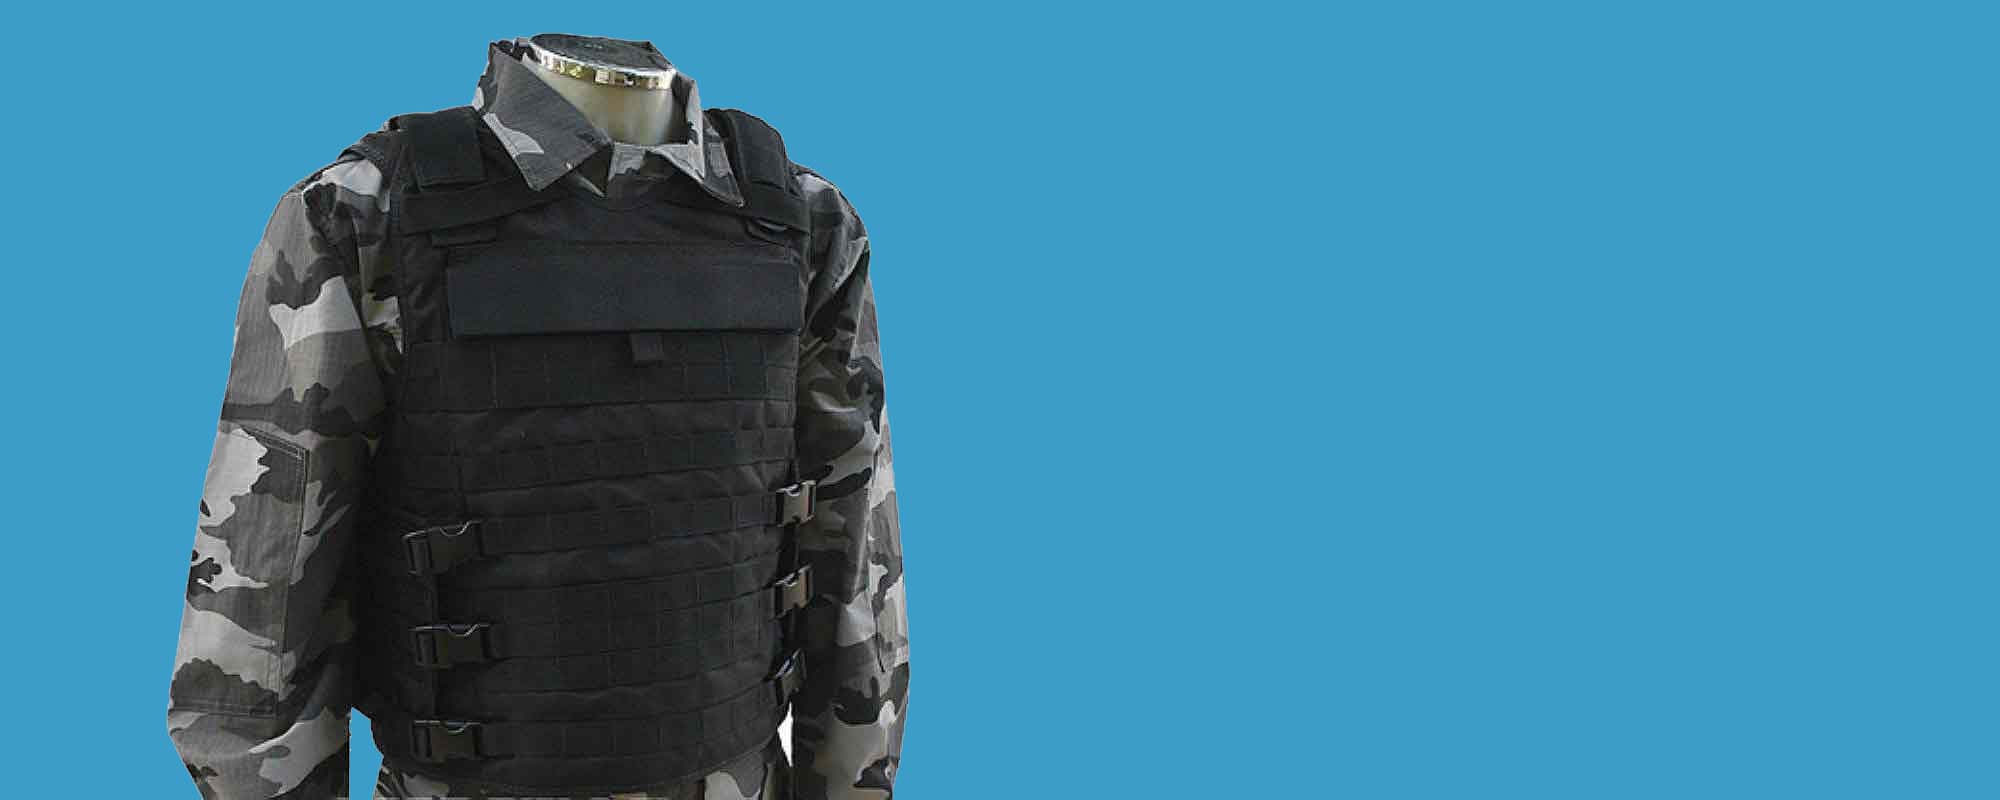 Tecidos para uniformes militares